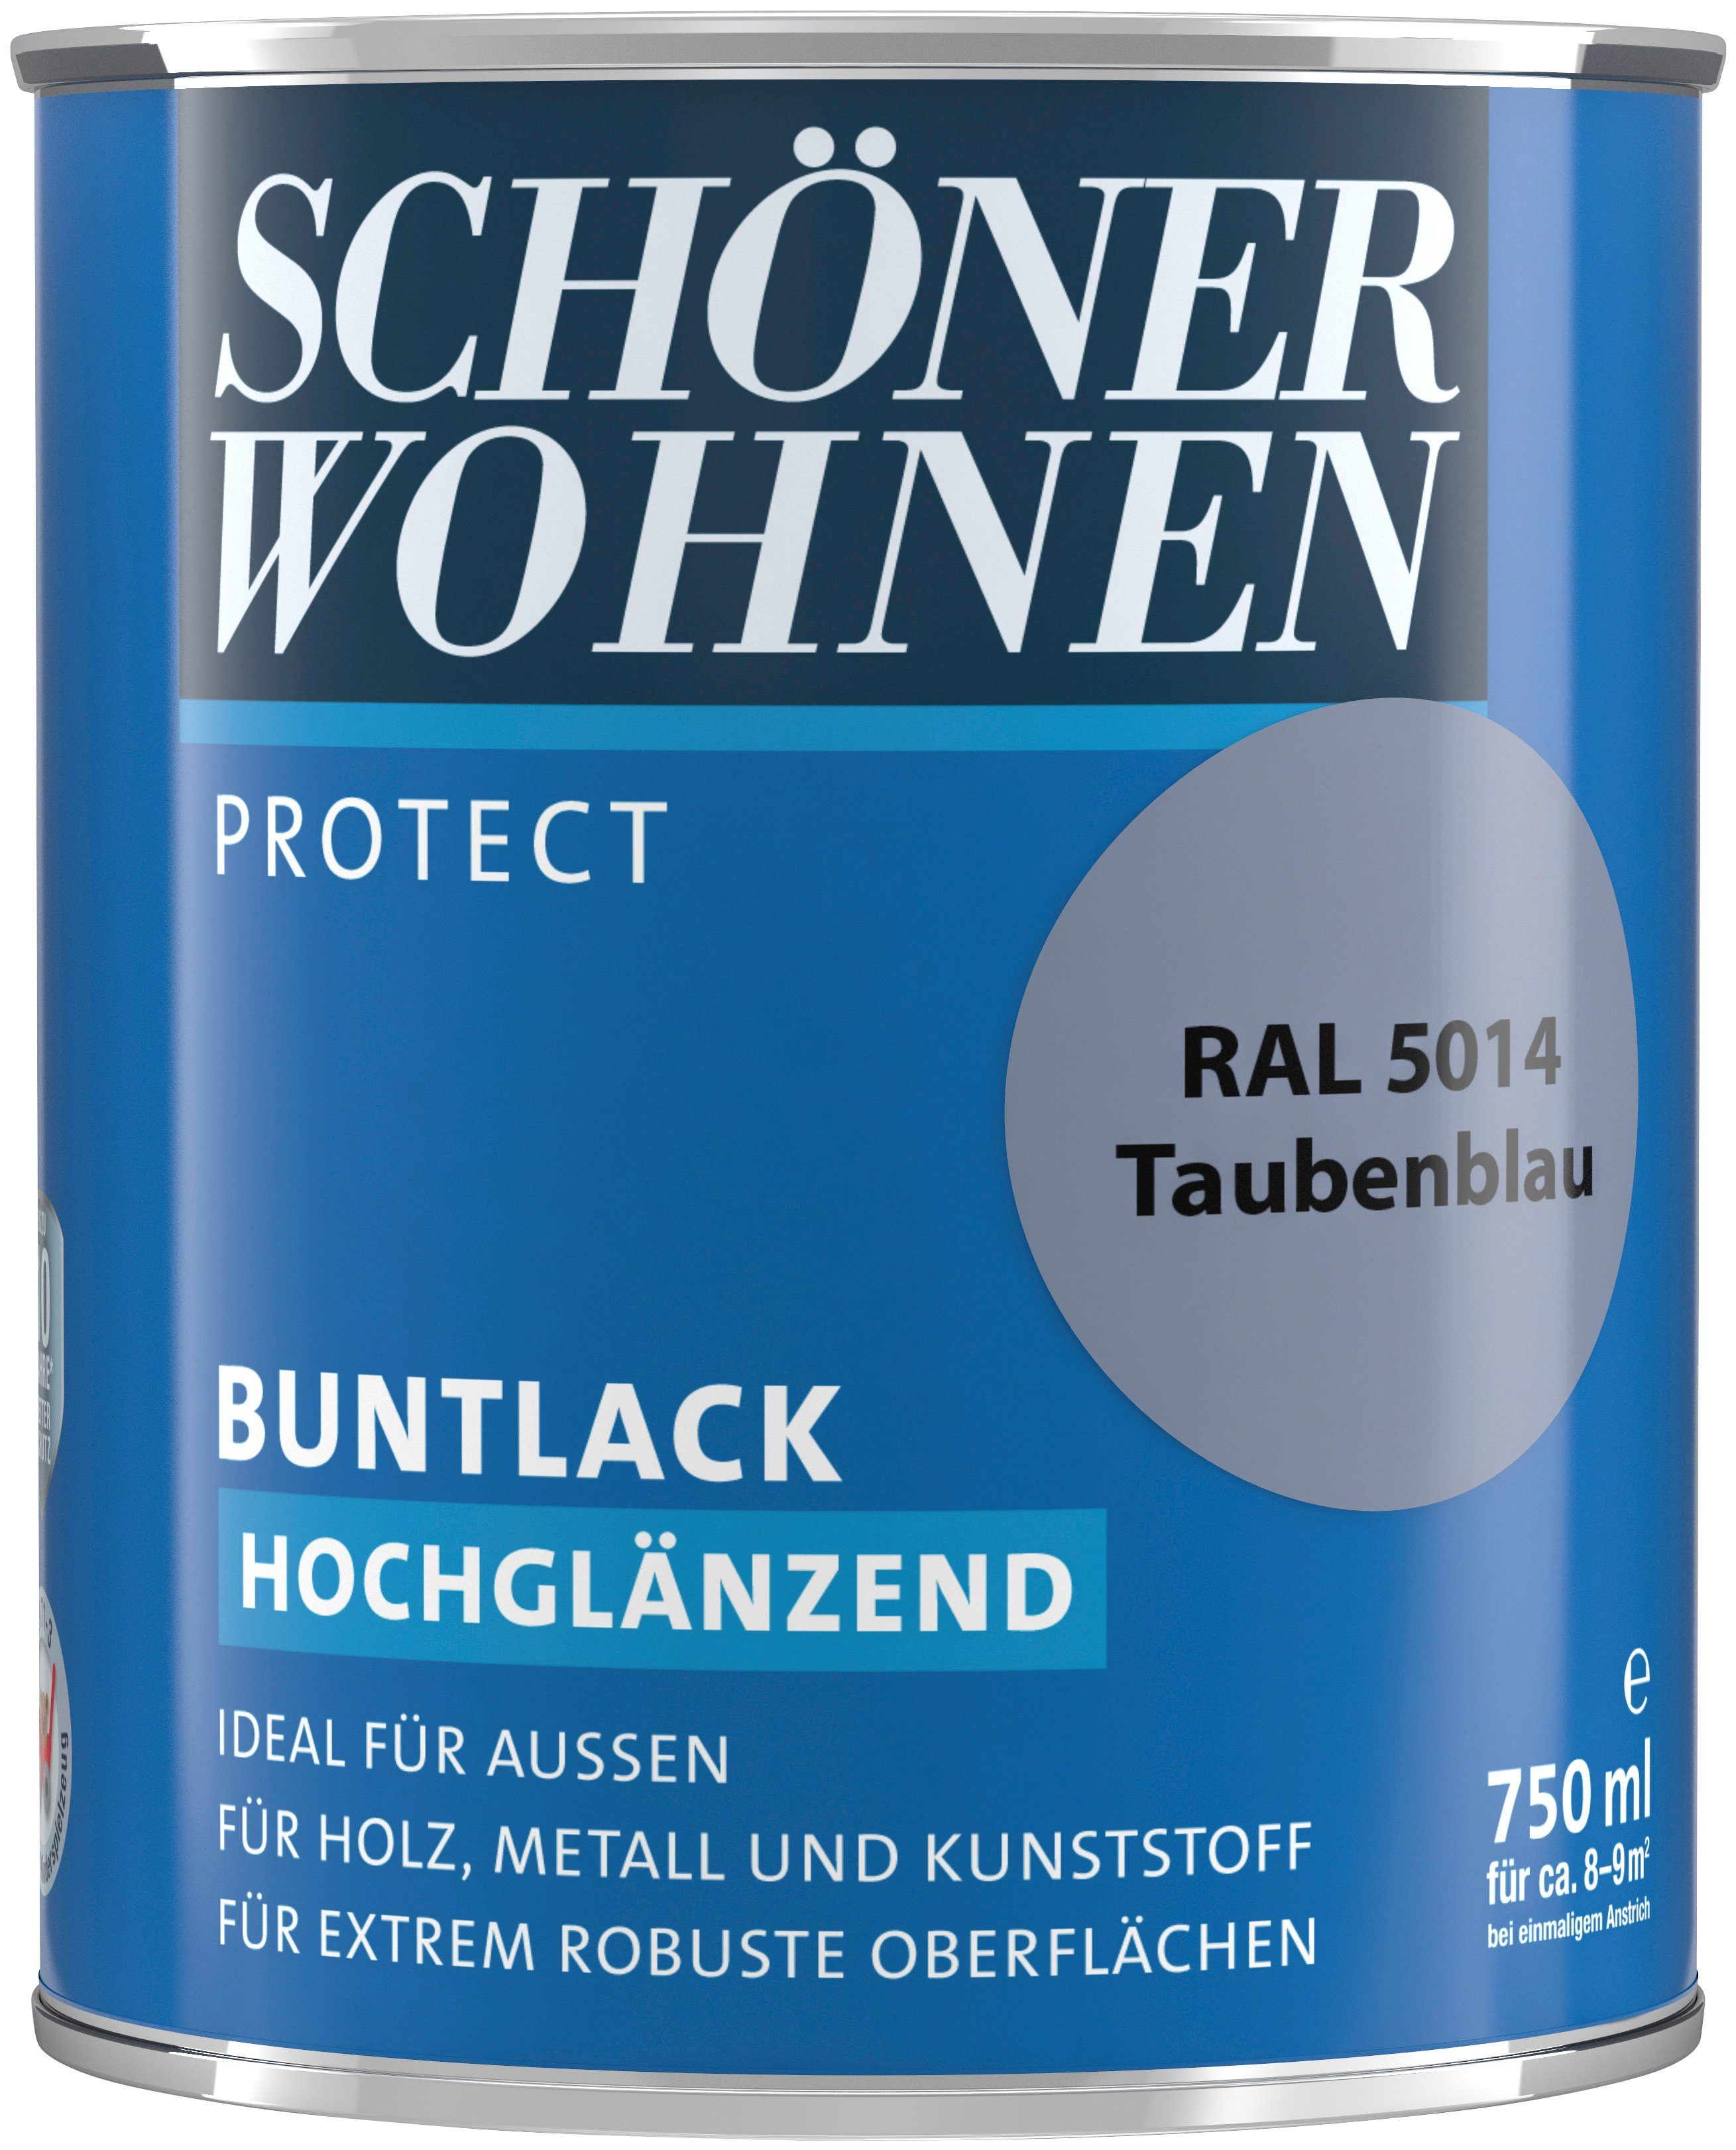 SCHÖNER WOHNEN FARBE Lack Protect Buntlack, 750 ml, taubenblau RAL 5014, hochglänzend, ideal für außen